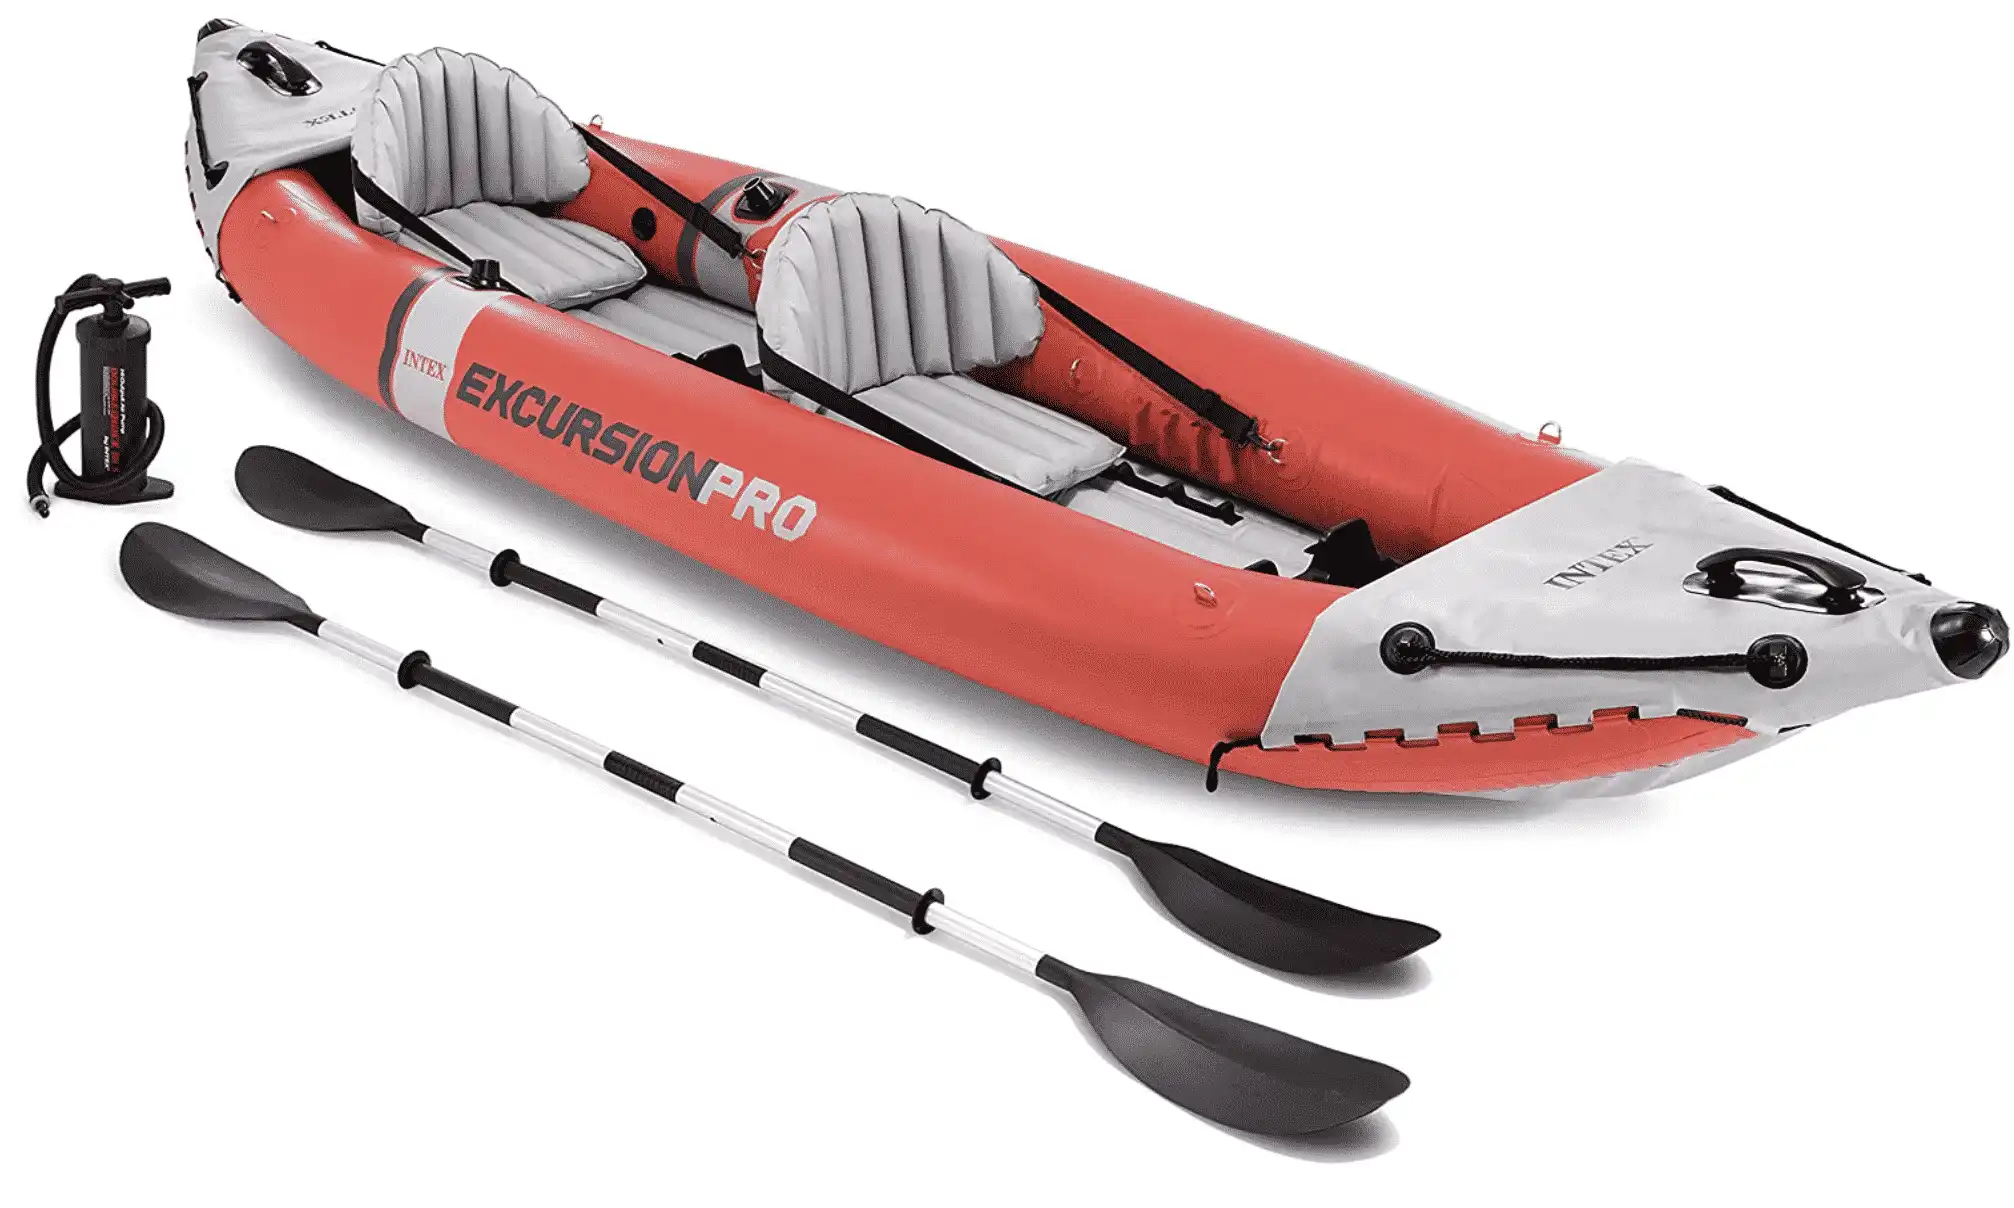 Intex Excursion Pro Kayak, Professional Series Inflatable Lightweight Kayak